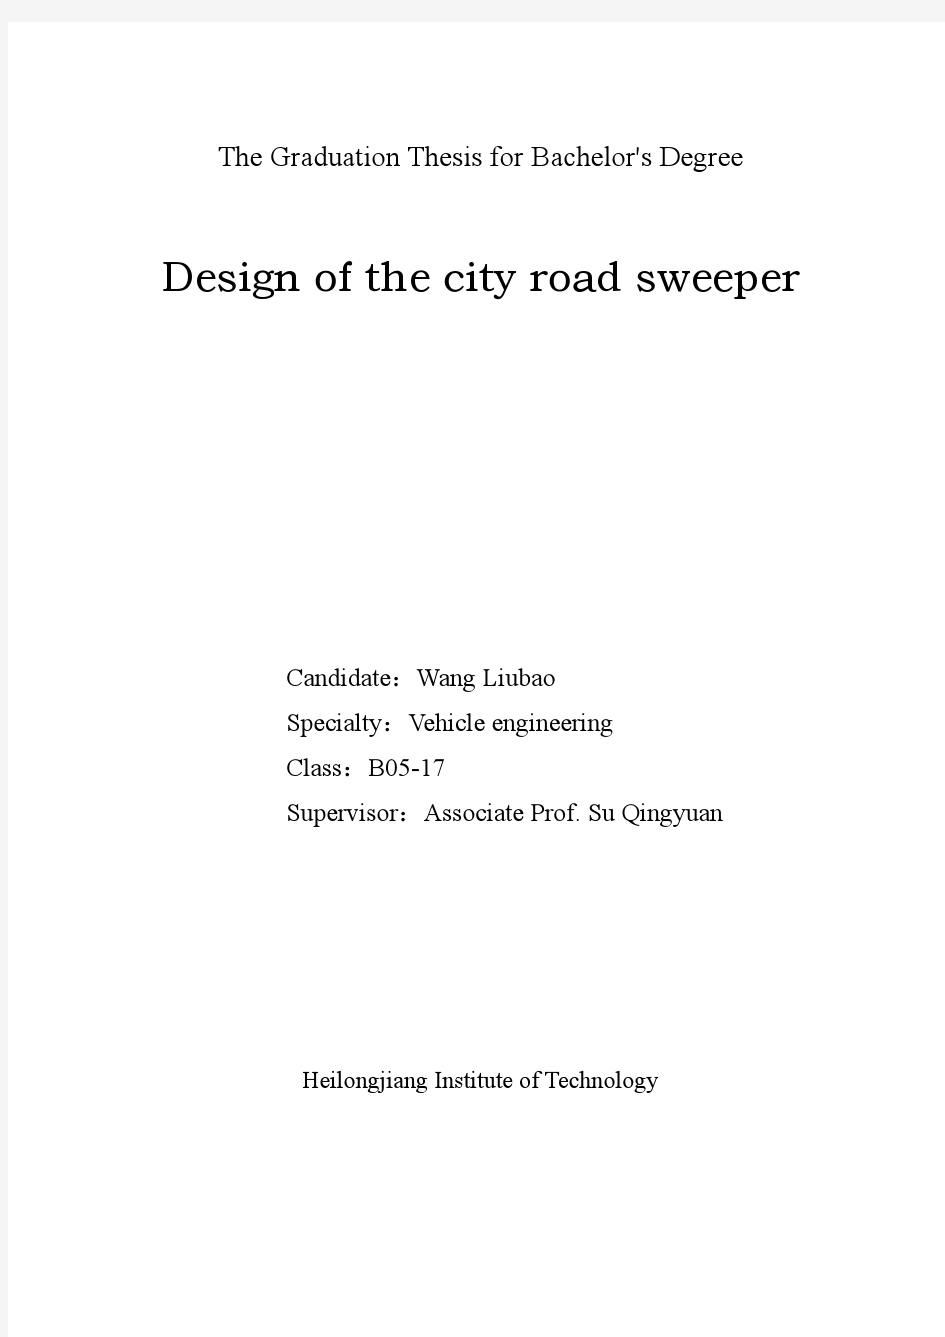 车辆工程毕业设计77城市道路清扫车的设计说明书